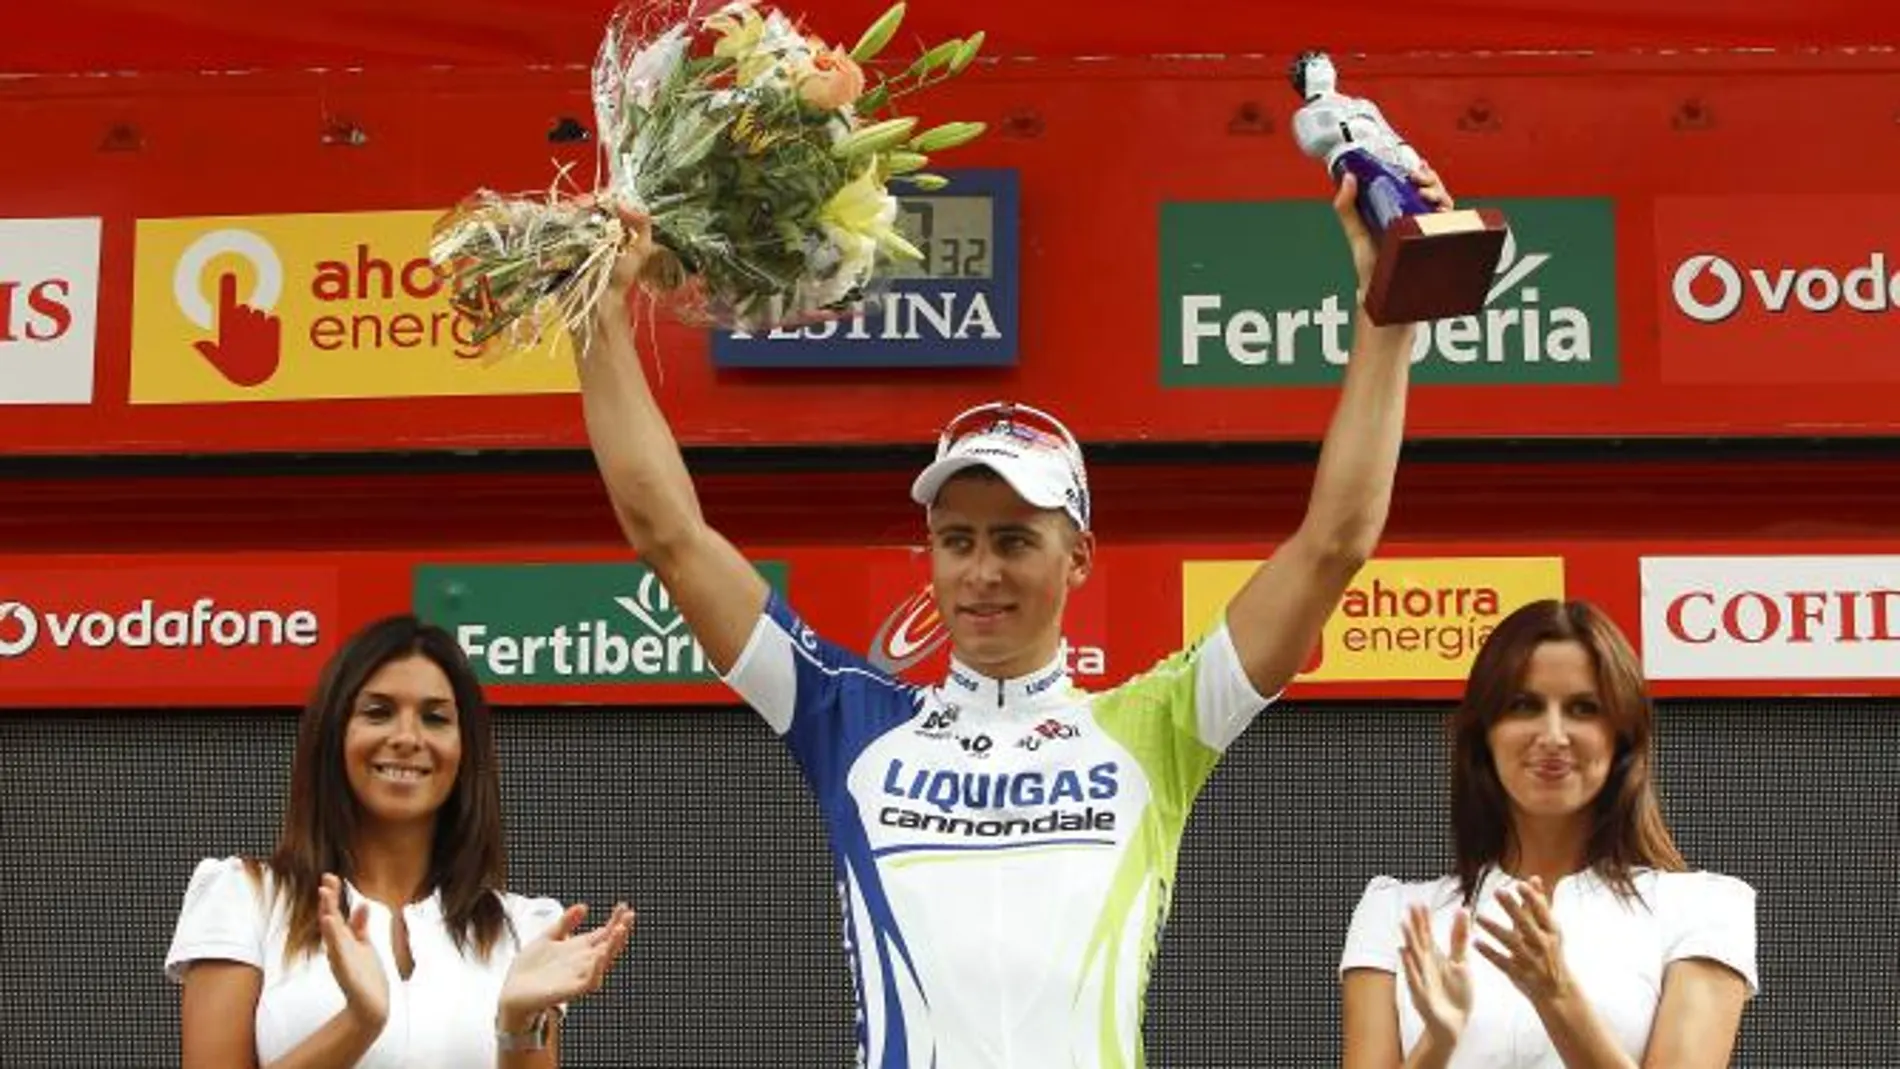 El eslovaco Peter Sagan, del Liquigas-Cannondale, celebra en el podio su triunfo en la duodécima etapa de la Vuelta